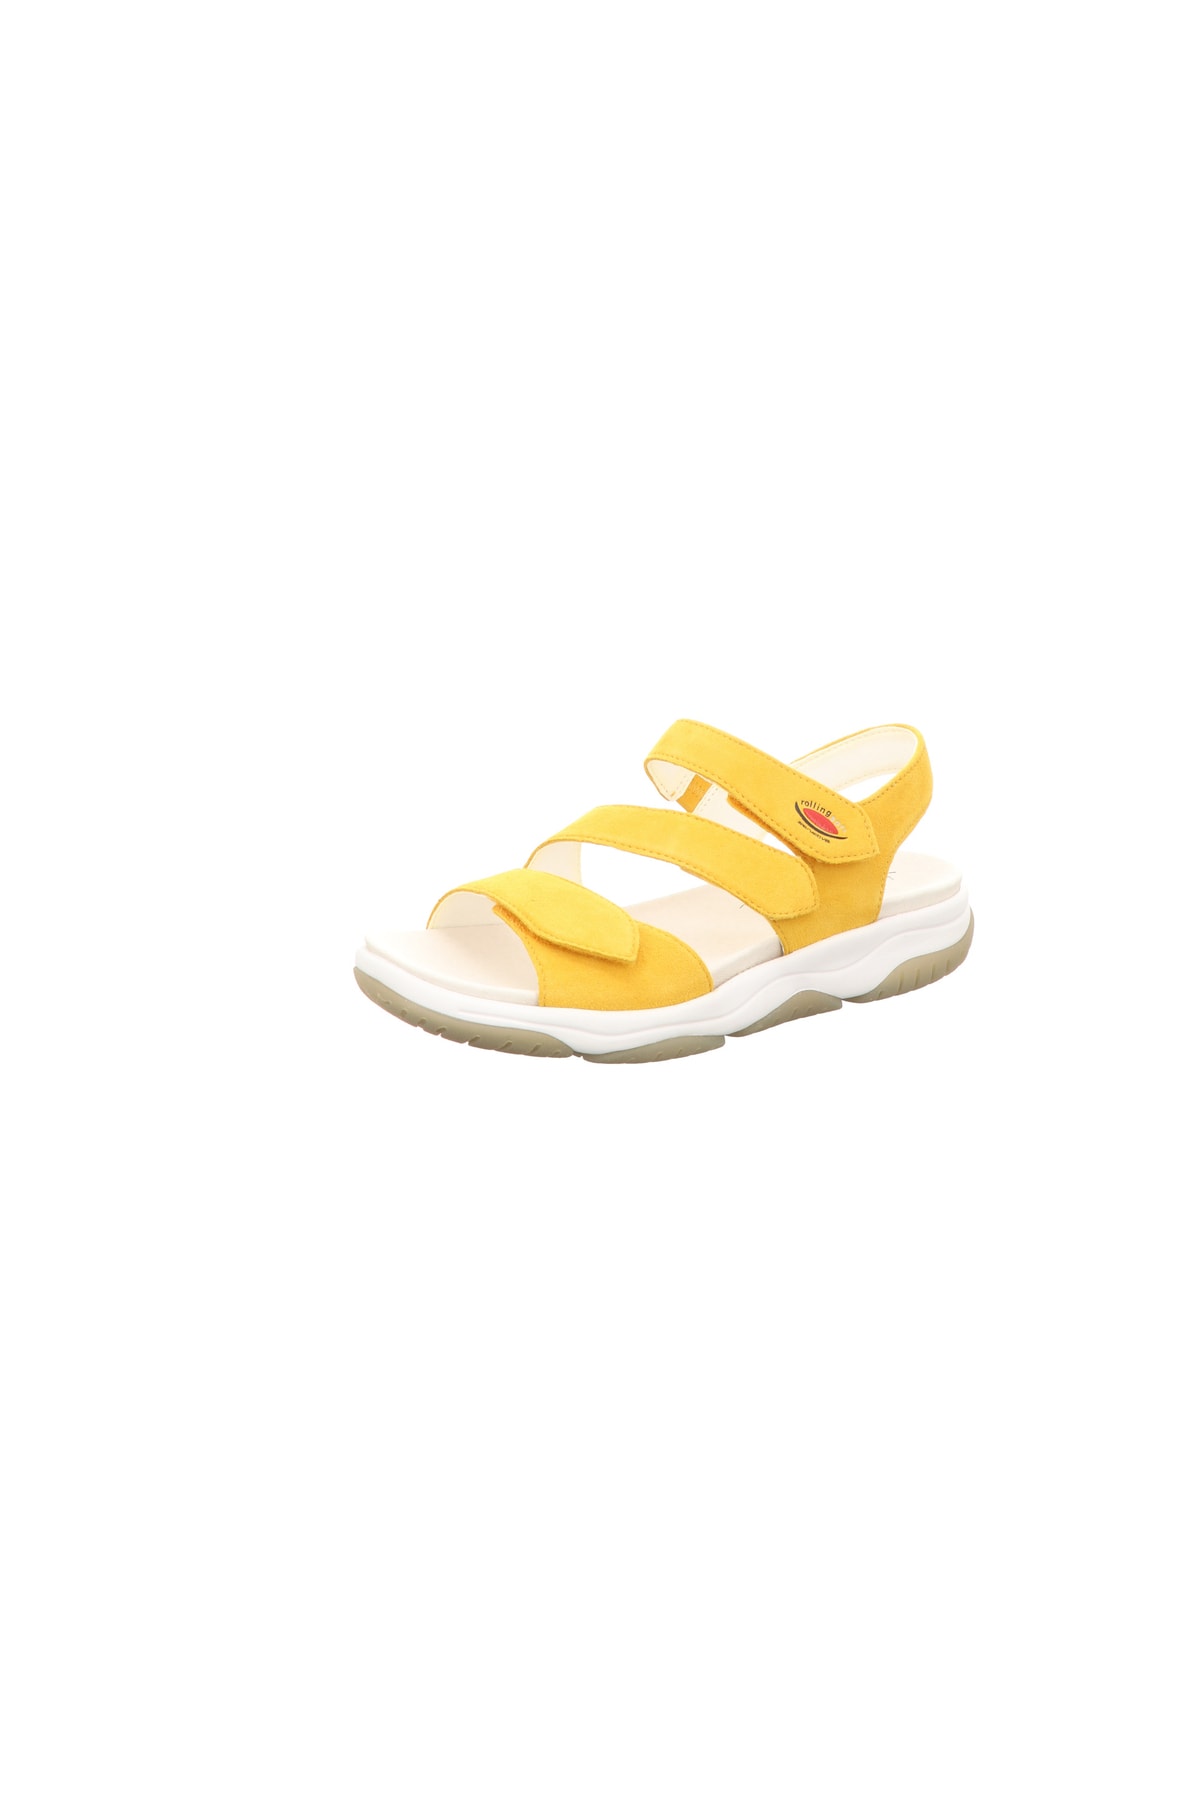 GABOR Sandalette Gelb Flacher Absatz Fast ausverkauft